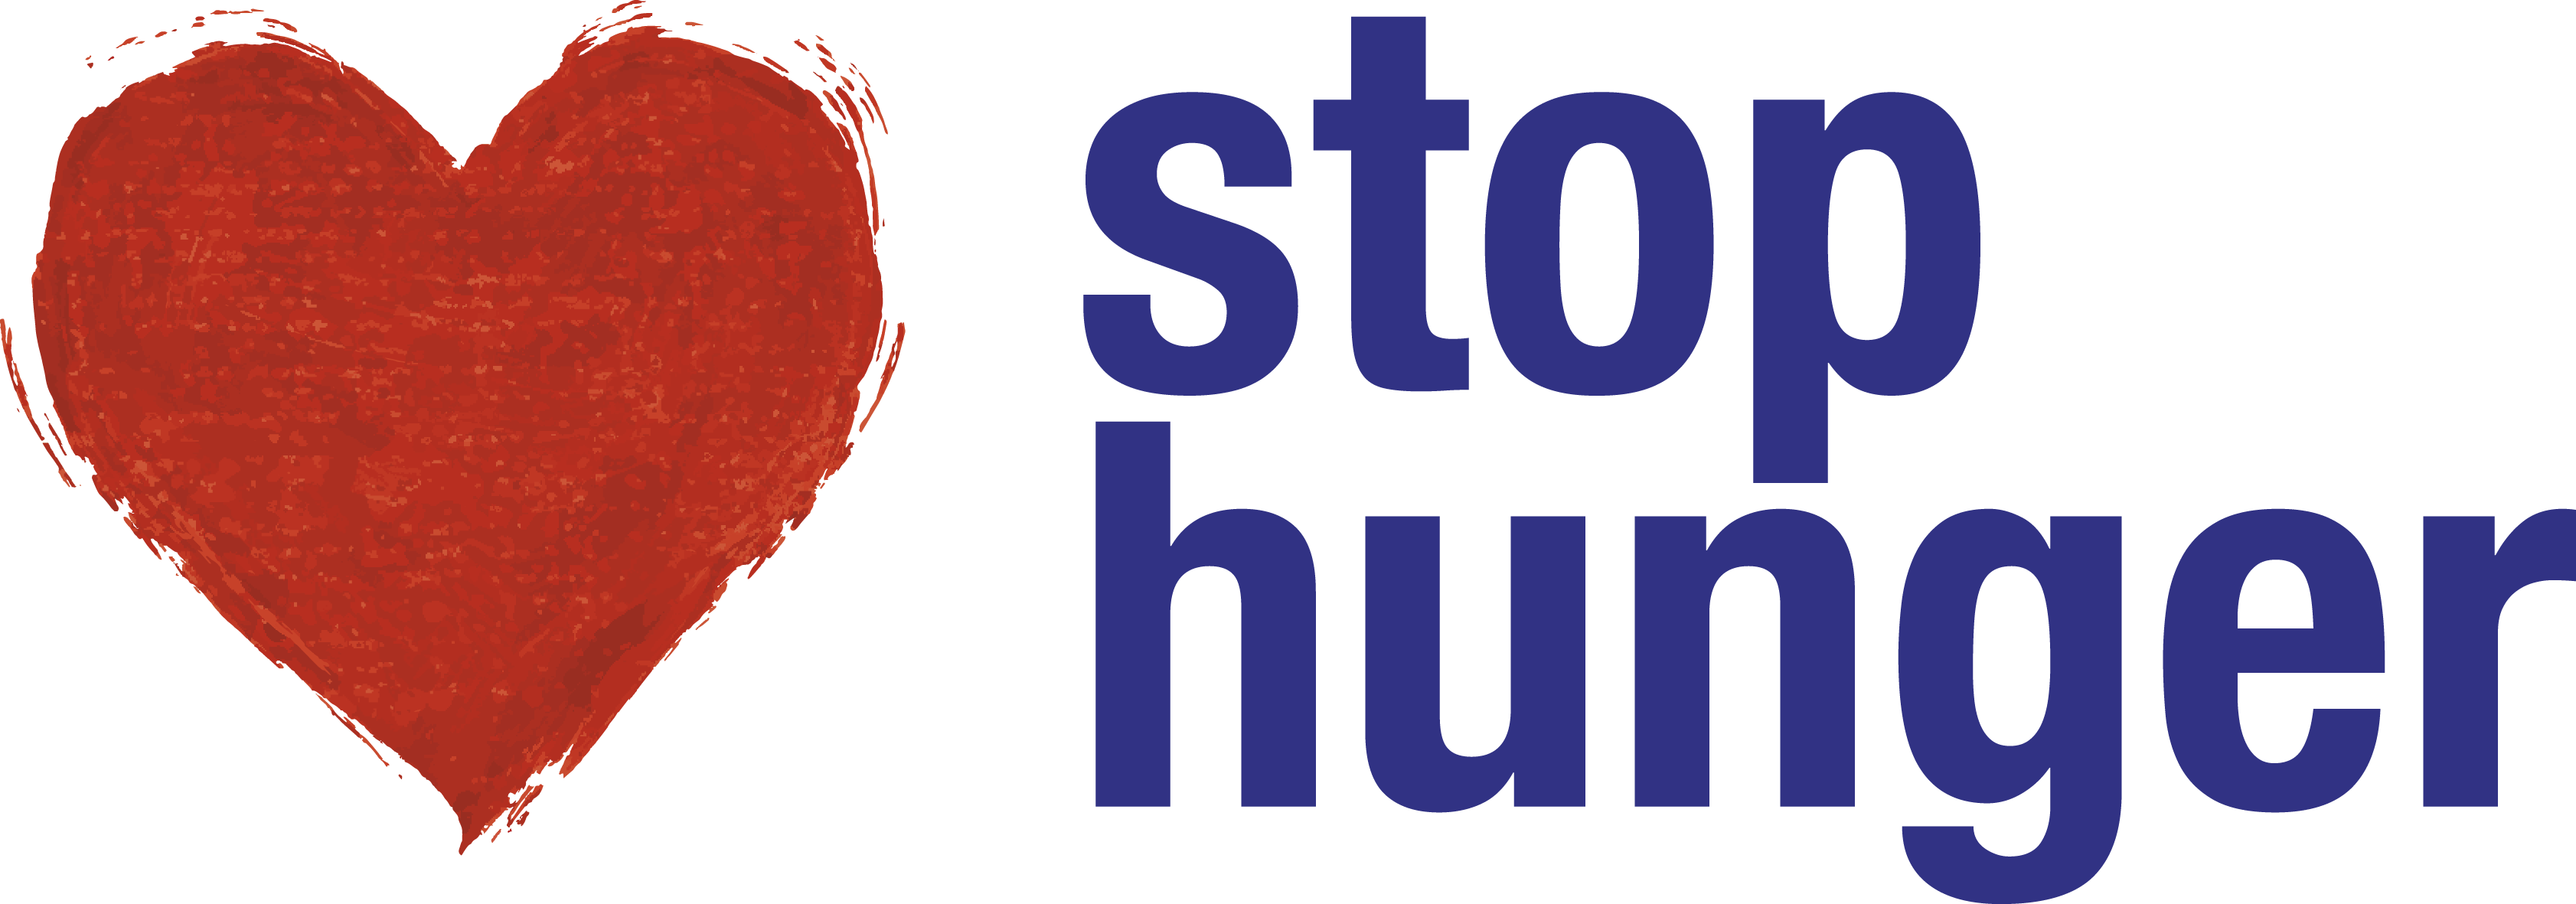 Asociatia Stop Hunger logo